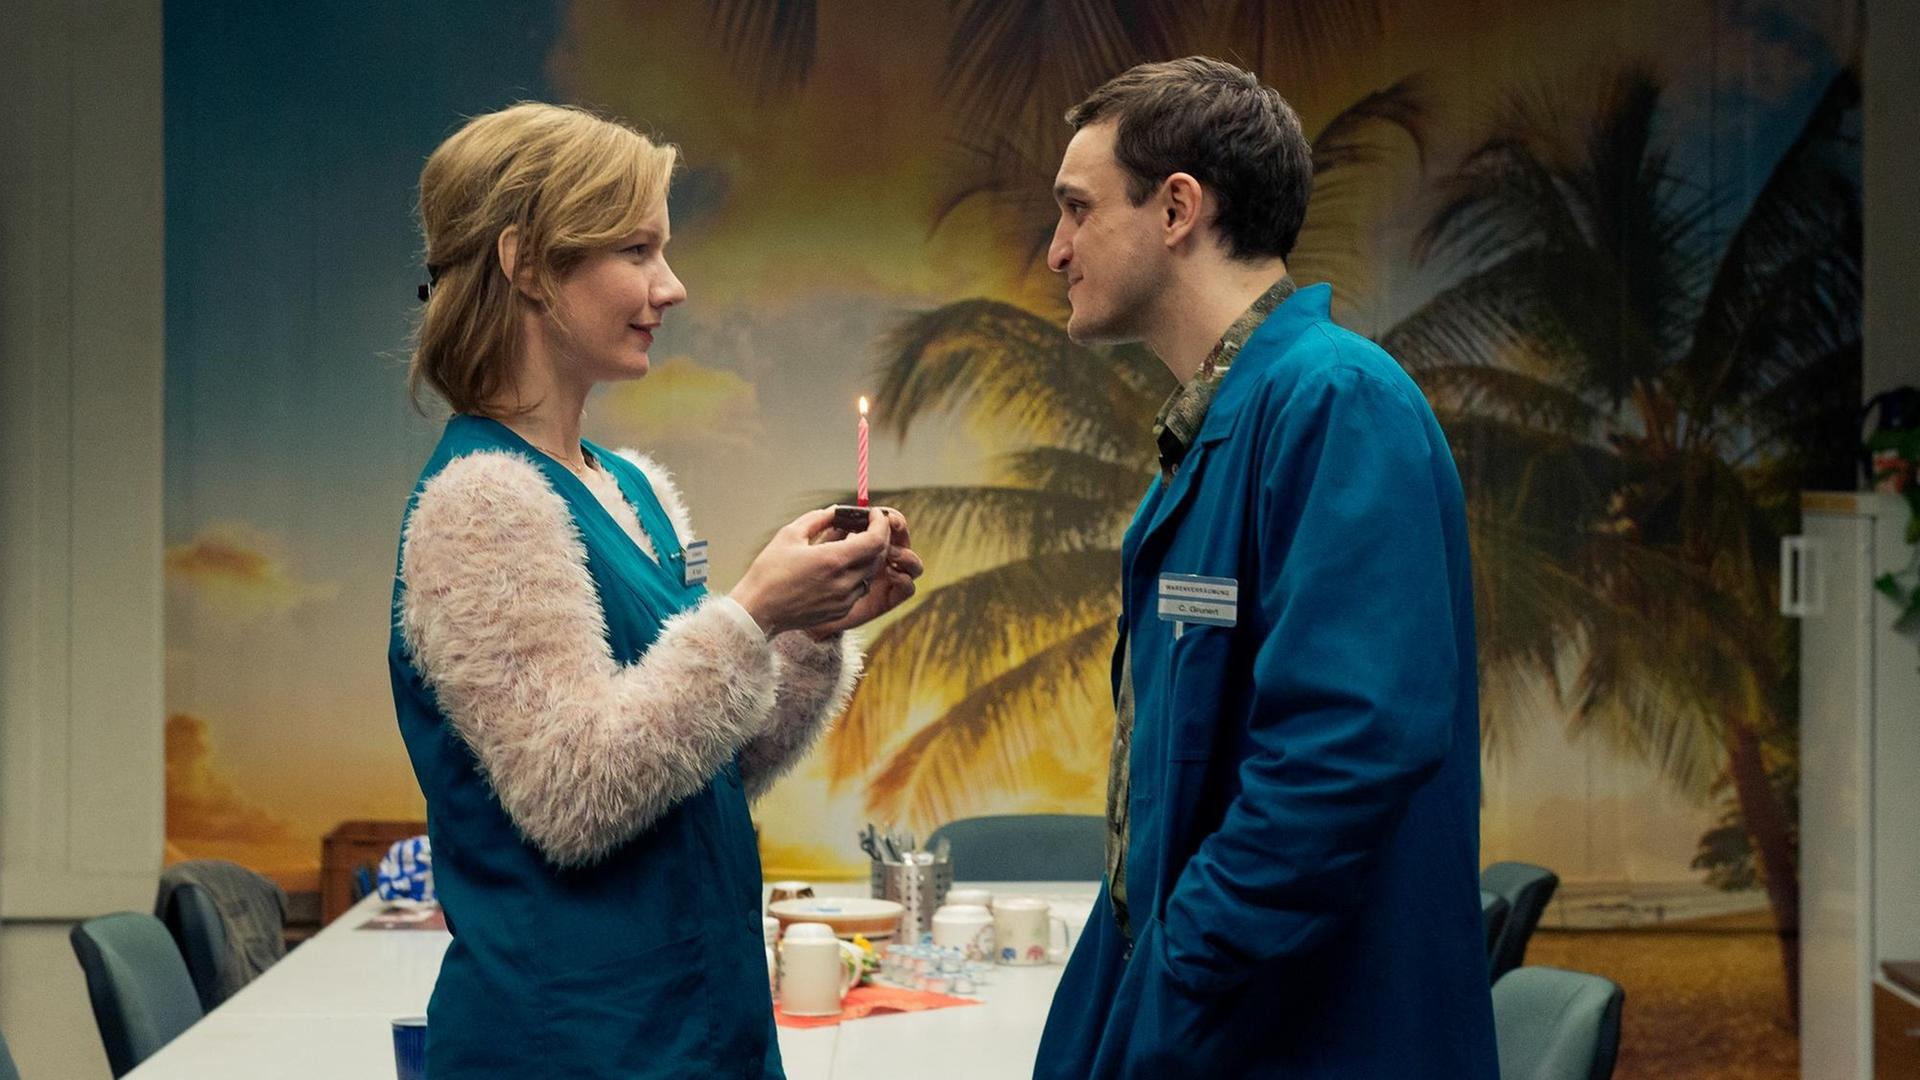 Eine Szene aus dem Film "In den Gängen": Christian und Marion treffen sich im Aufenthaltsraum, sie hält eine Kerze hoch.